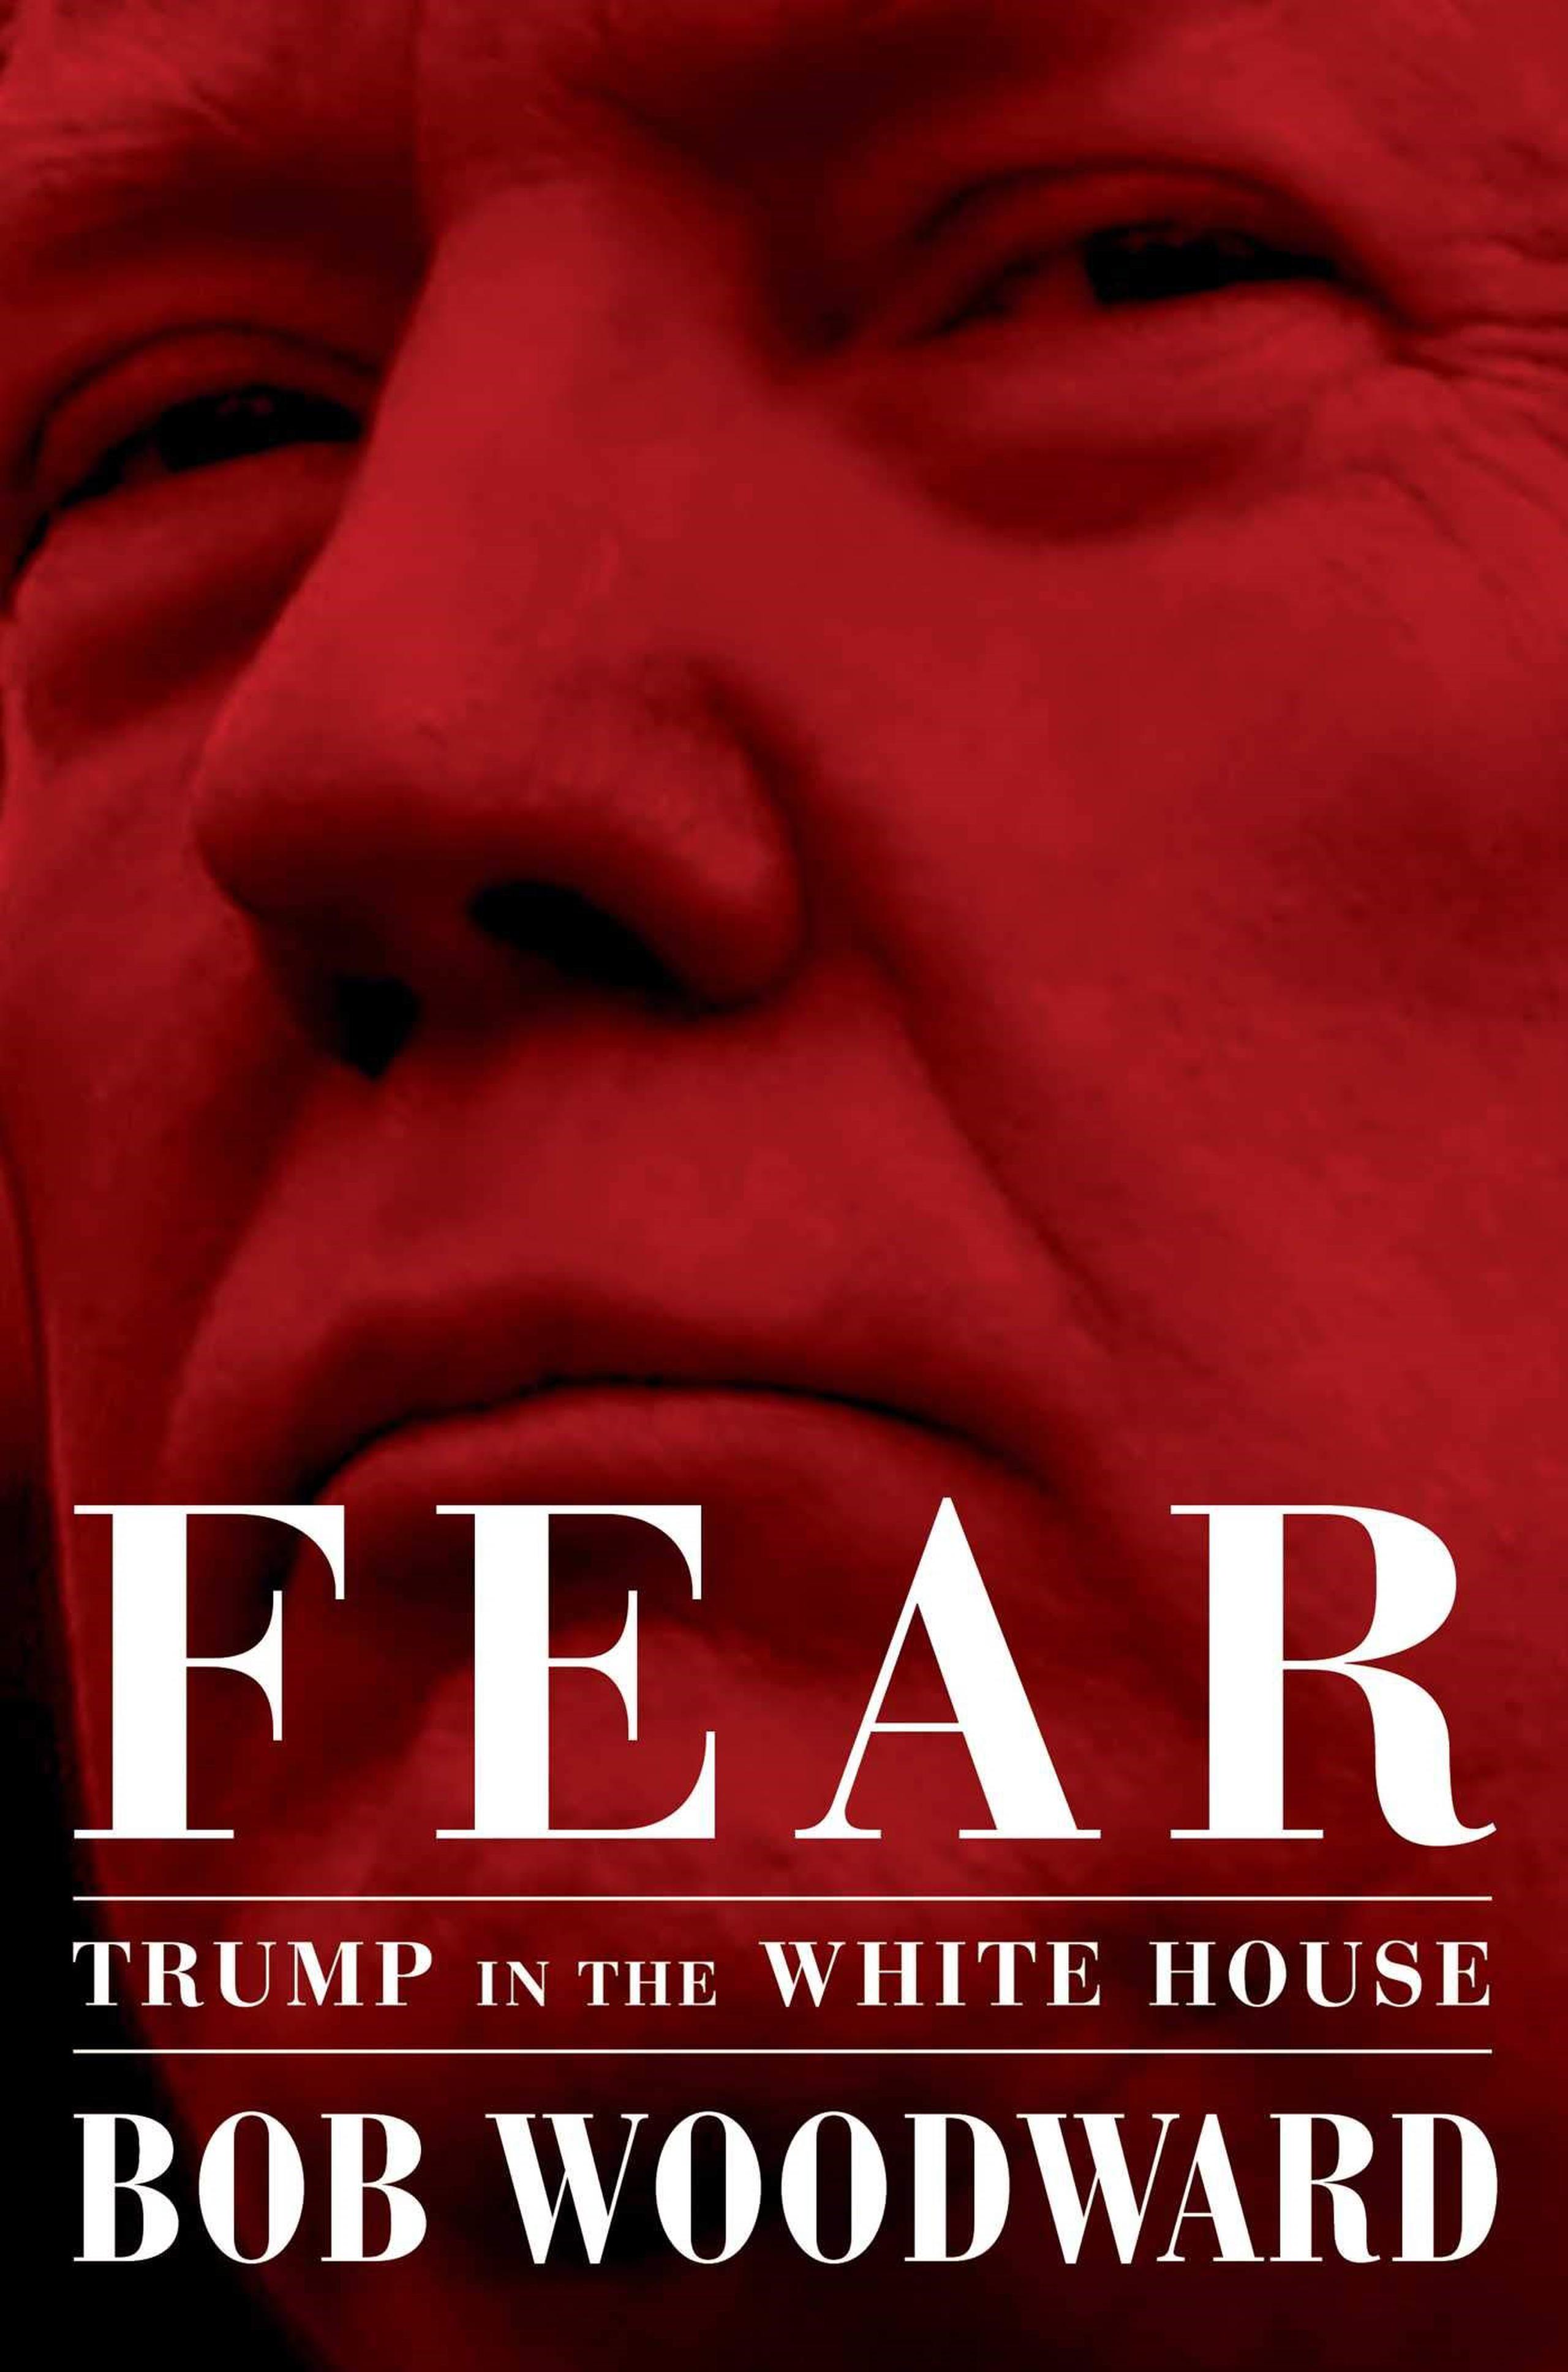 Portada del libro “Fear: Trump in the White House”. (Bob Woodward)